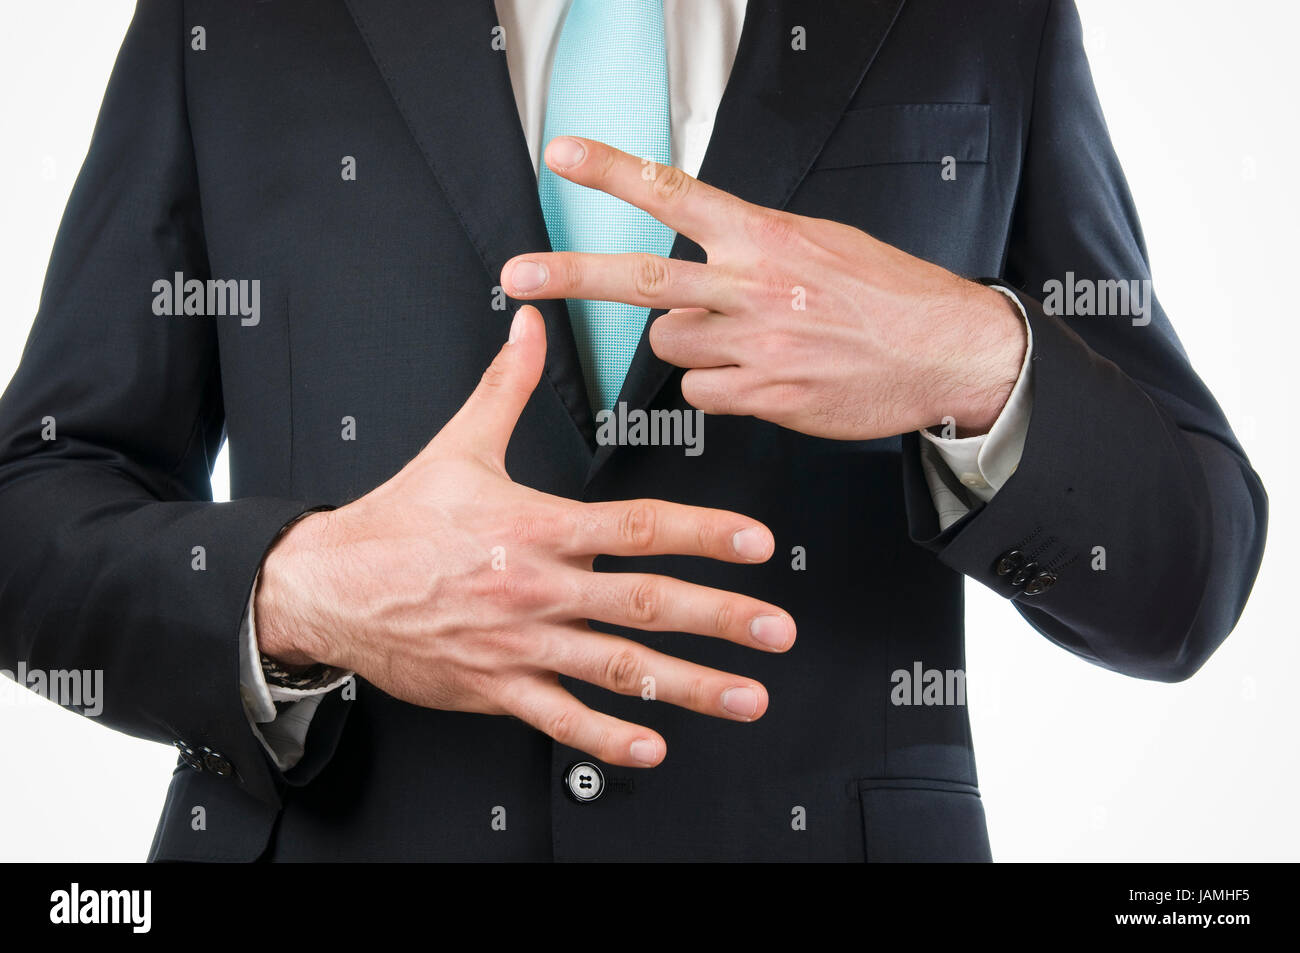 Brust-und-Bauch-Ansicht eines jungen Mannes im schwarzen Anzug mit vor sich gehaltenen Händen die '7' anzeigend (sieben Finger) Stock Photo